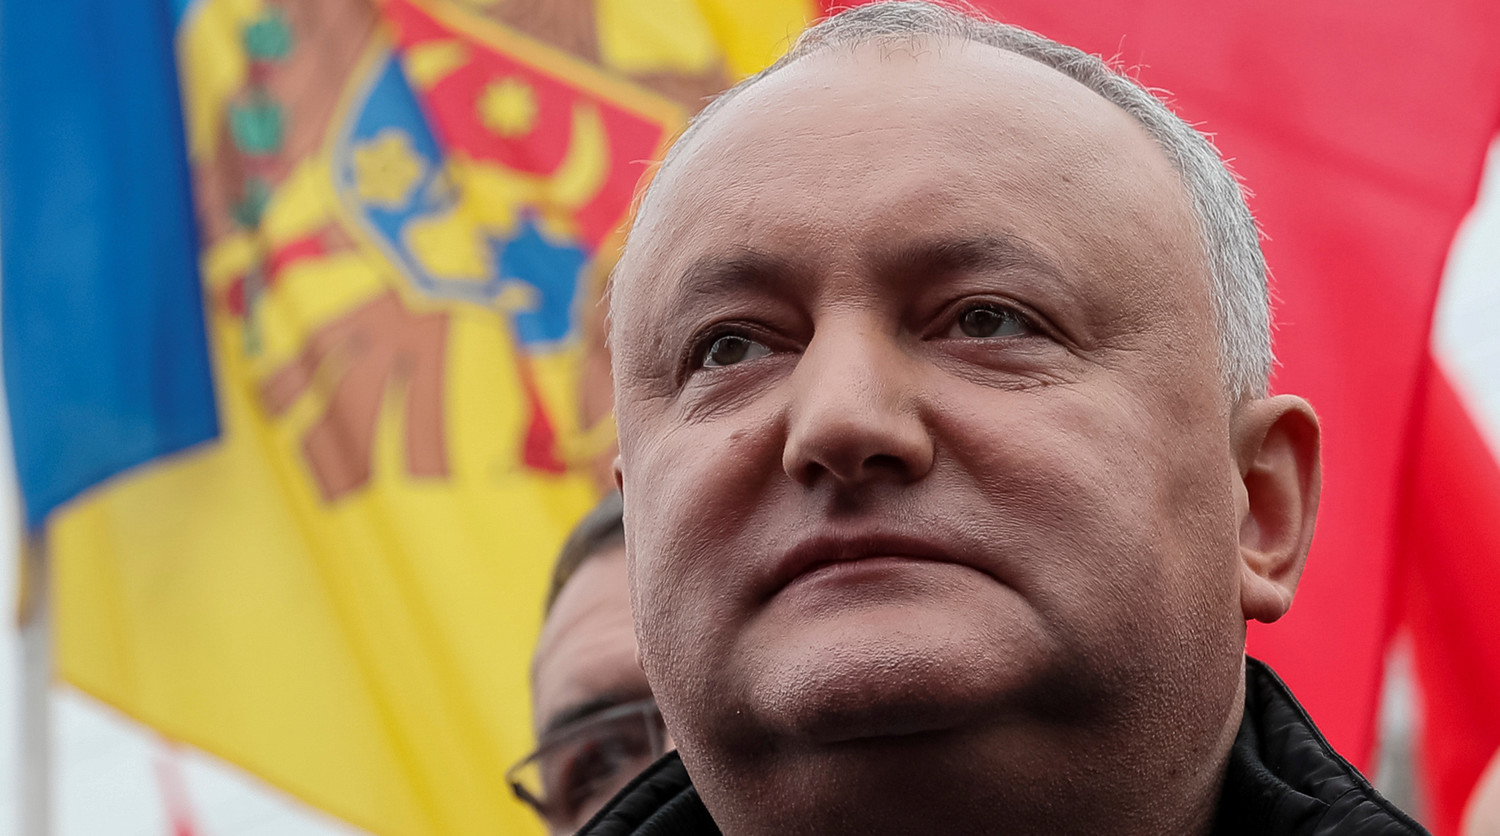 Додон предрек улучшение отношений Молдавии с РФ при новом правительстве